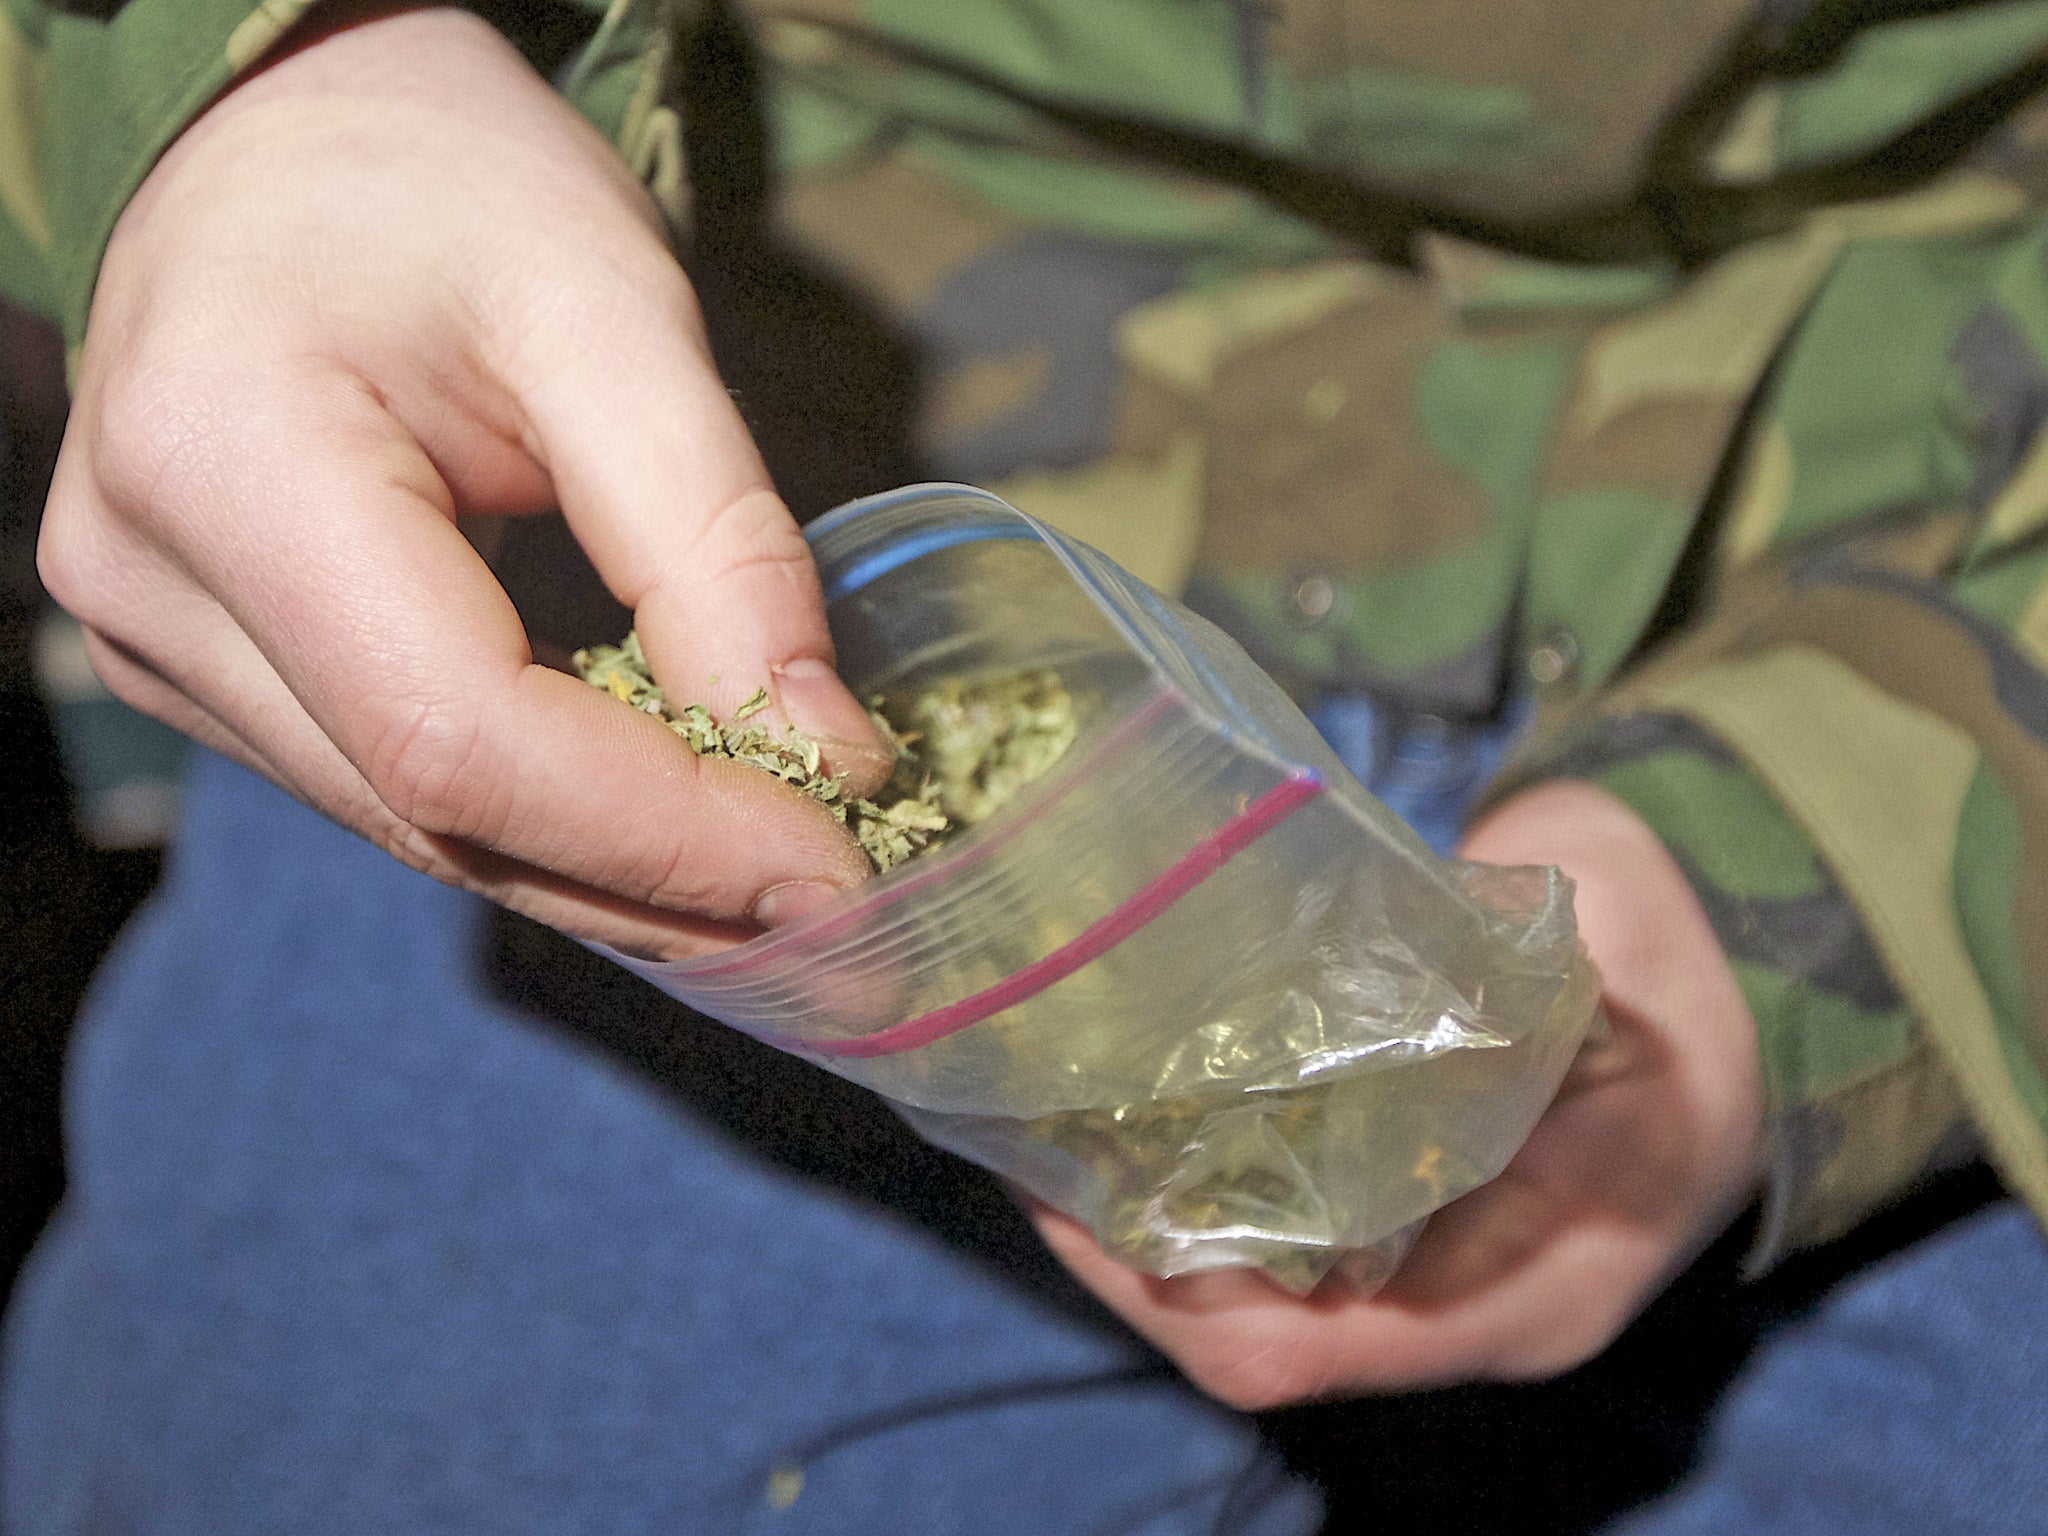 Washington voted to legalise marijuana for recreational use in 2012